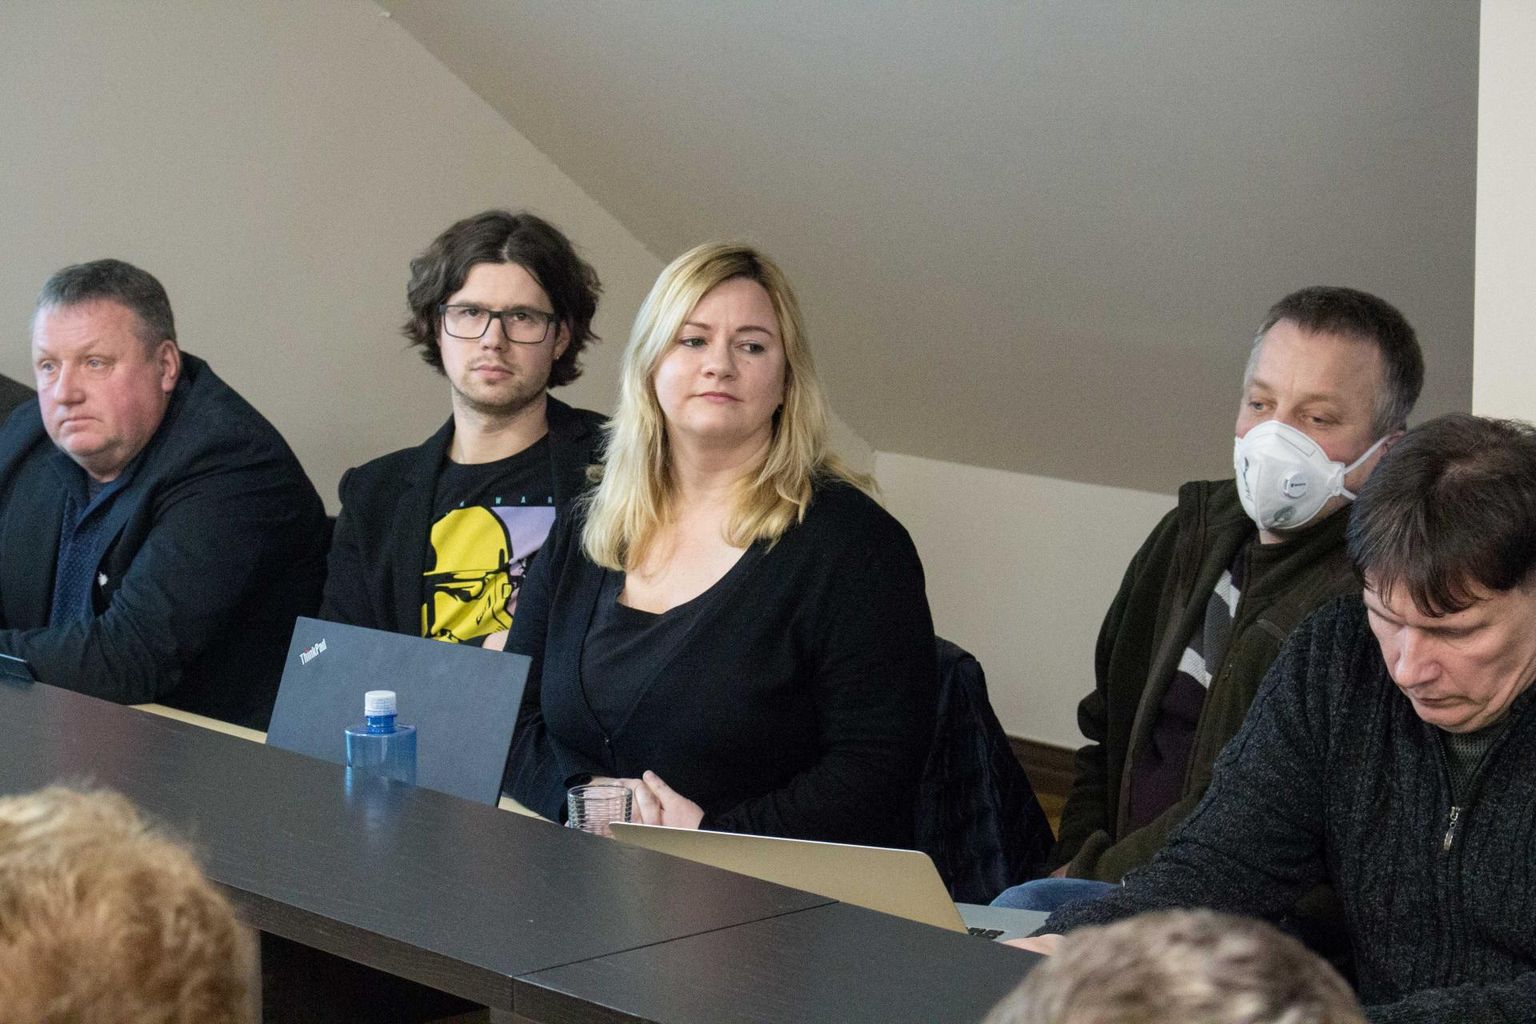 Vallavolikogu liige Kaupo Kutsar istus juba eelmisel erakorralisel istungil kaitsemaskis. Temast vasakul istuv Monika Rogenbaum on samuti tõsiselt mures.